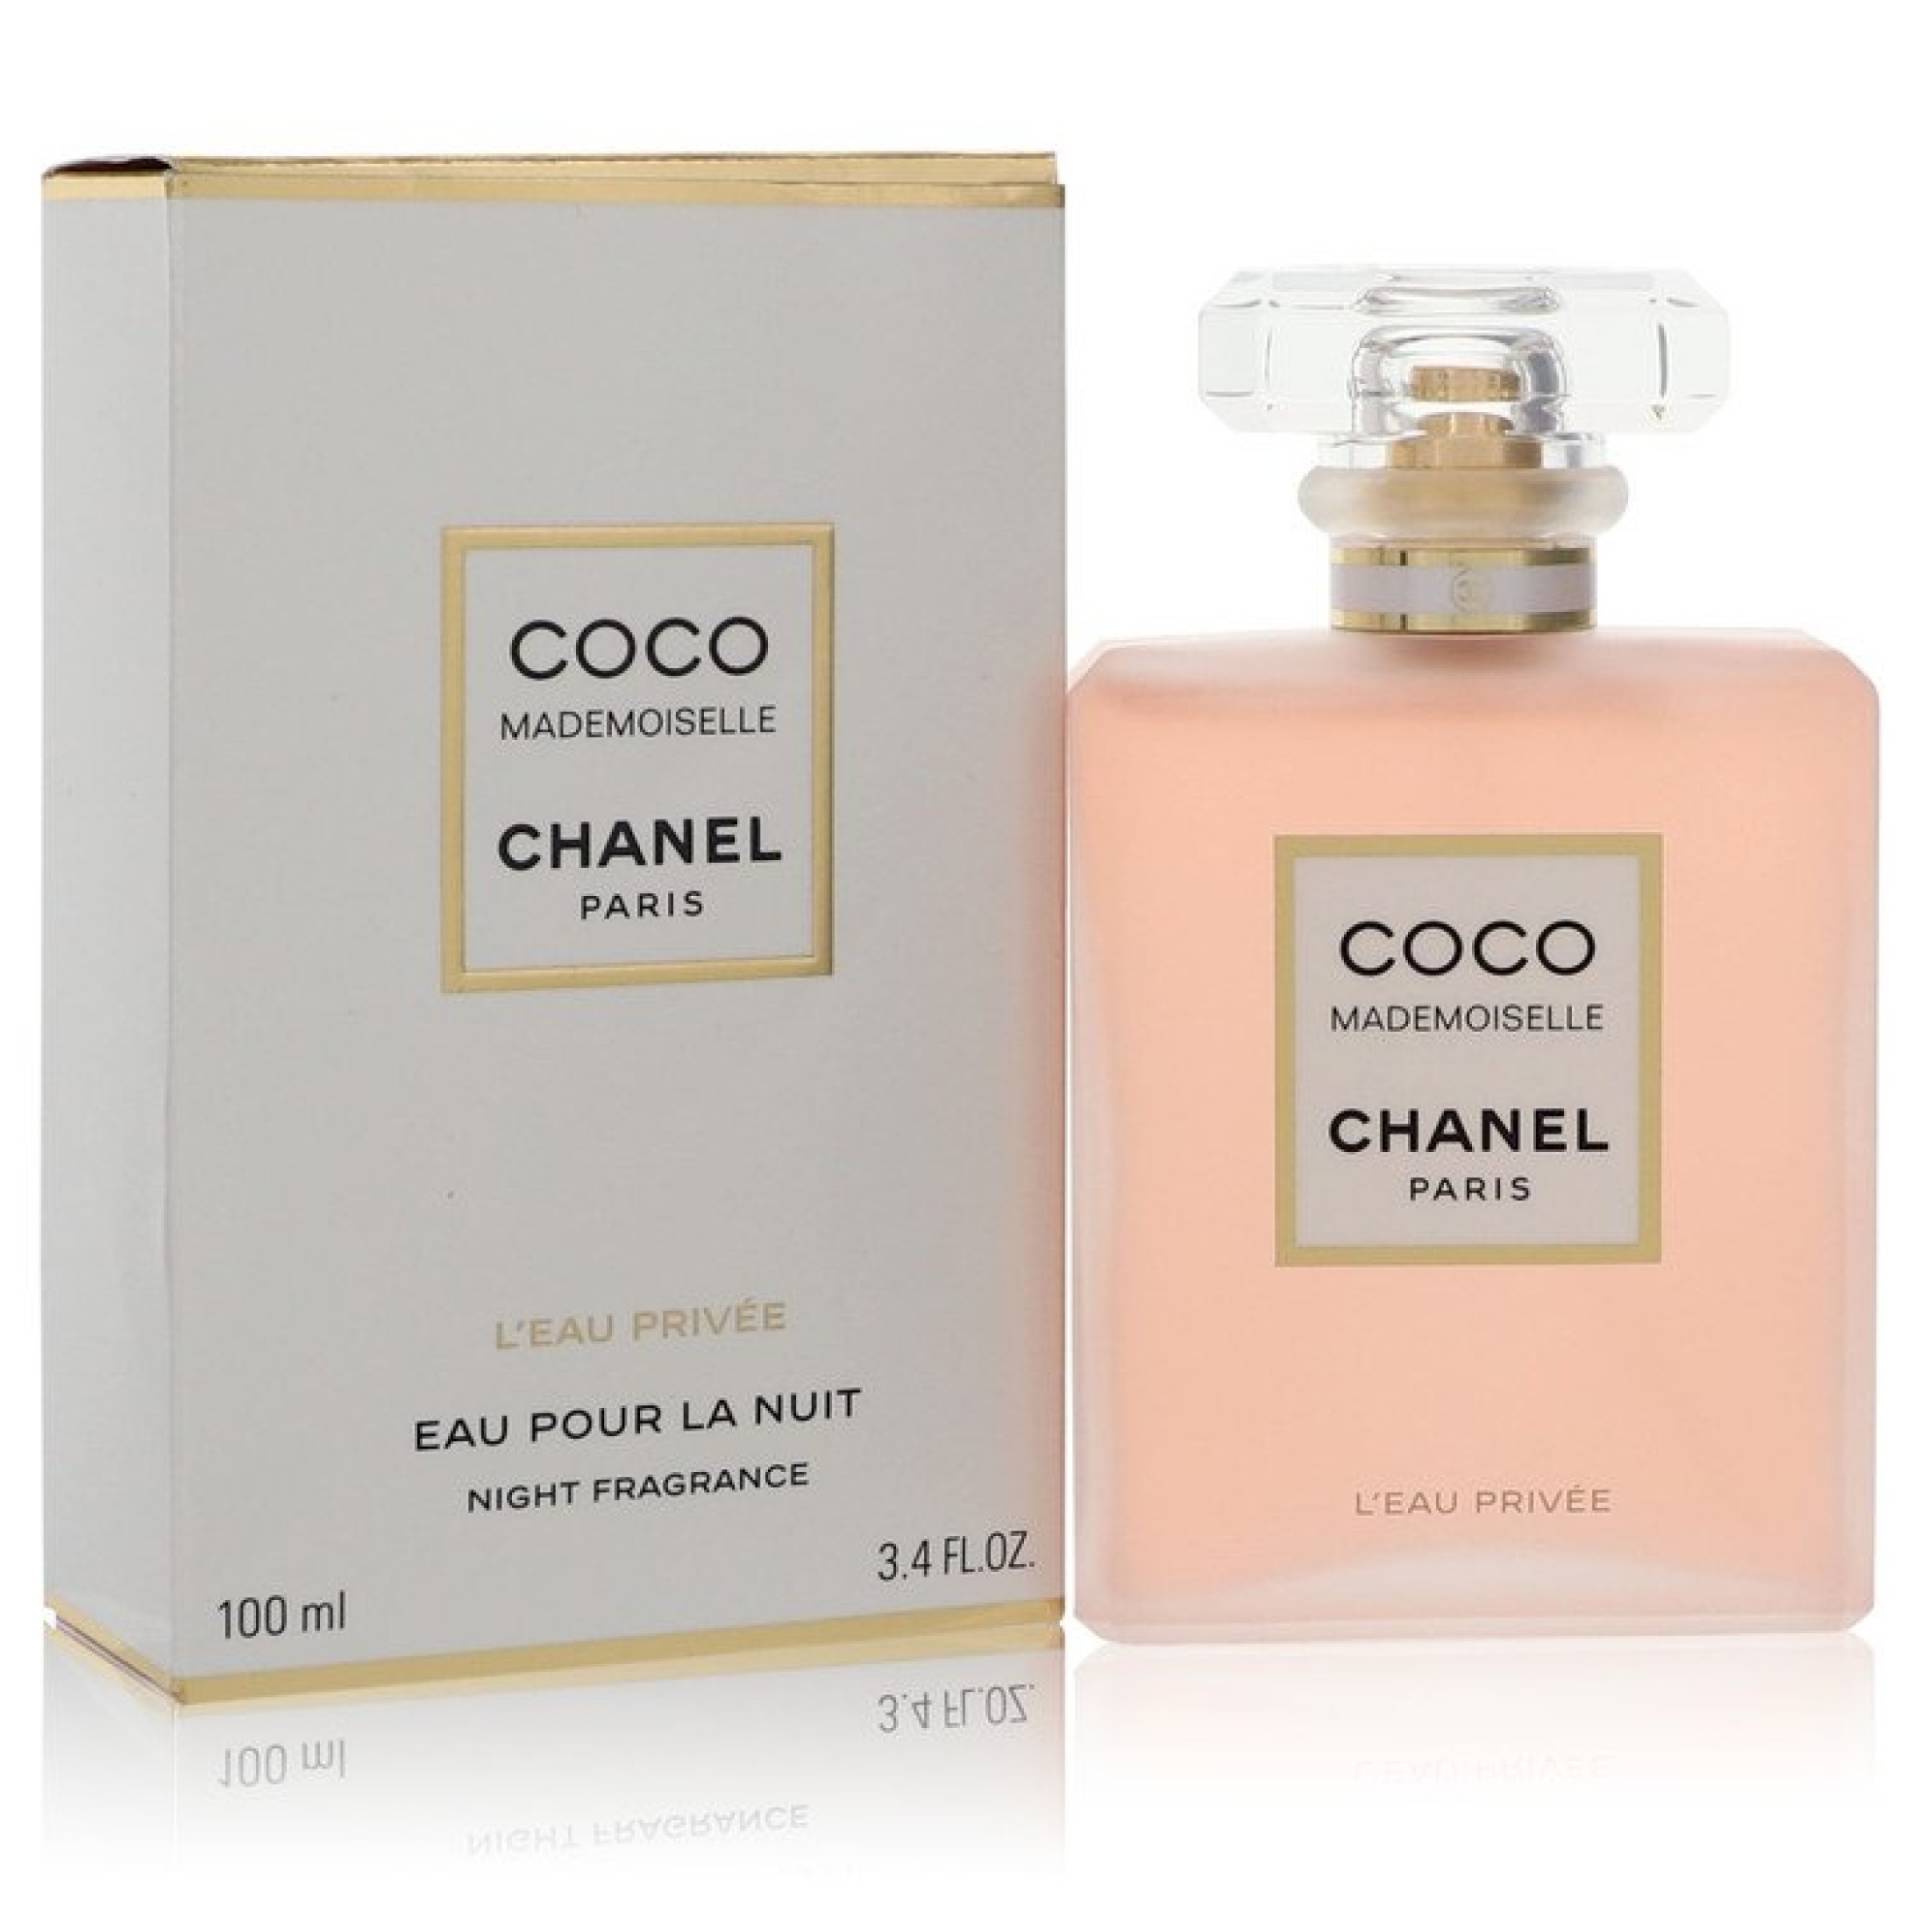 Chanel Coco Mademoiselle L'eau Privee Eau Pour La Nuit Spray 101 ml von Chanel